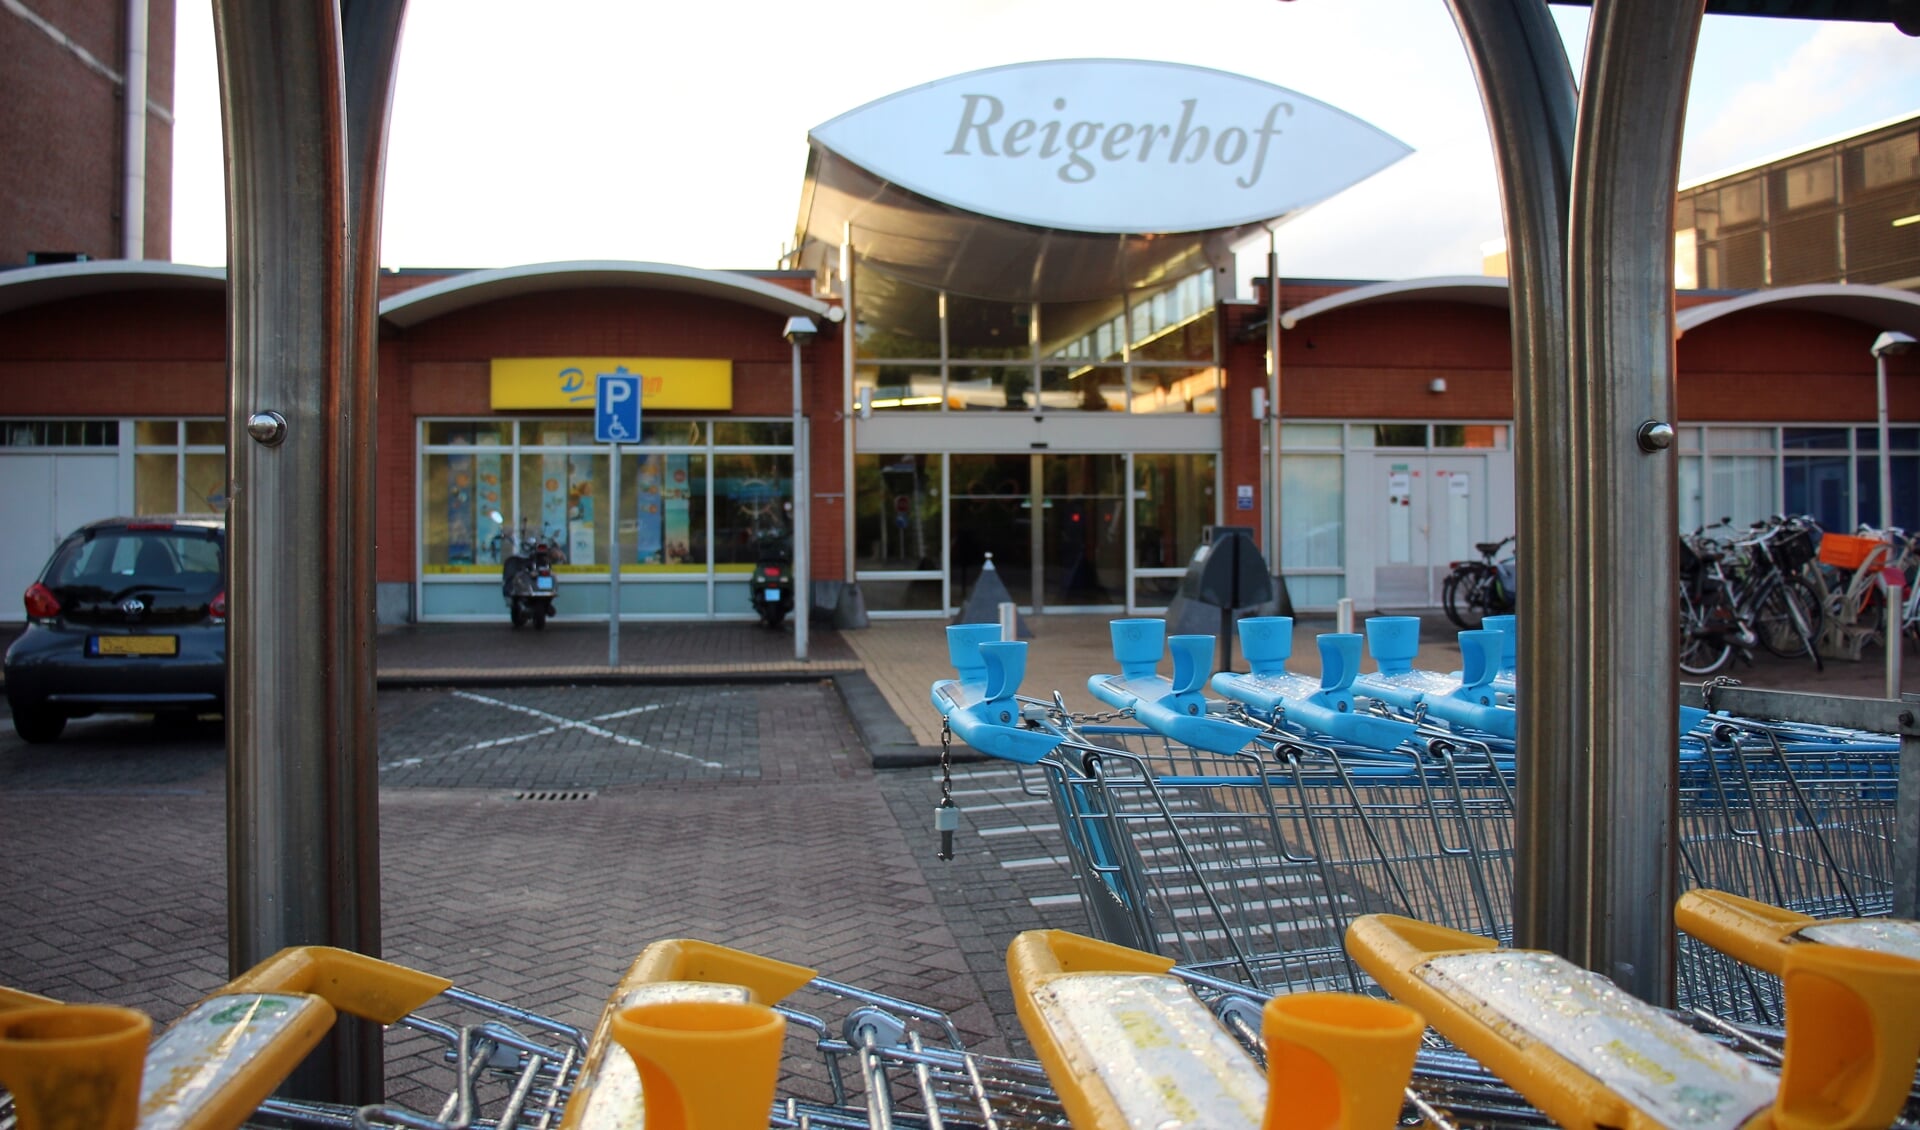 34,7 miljoen euro legde de nieuwe eigenaar van Reigerhof voor het winkelcentrum op tafel.